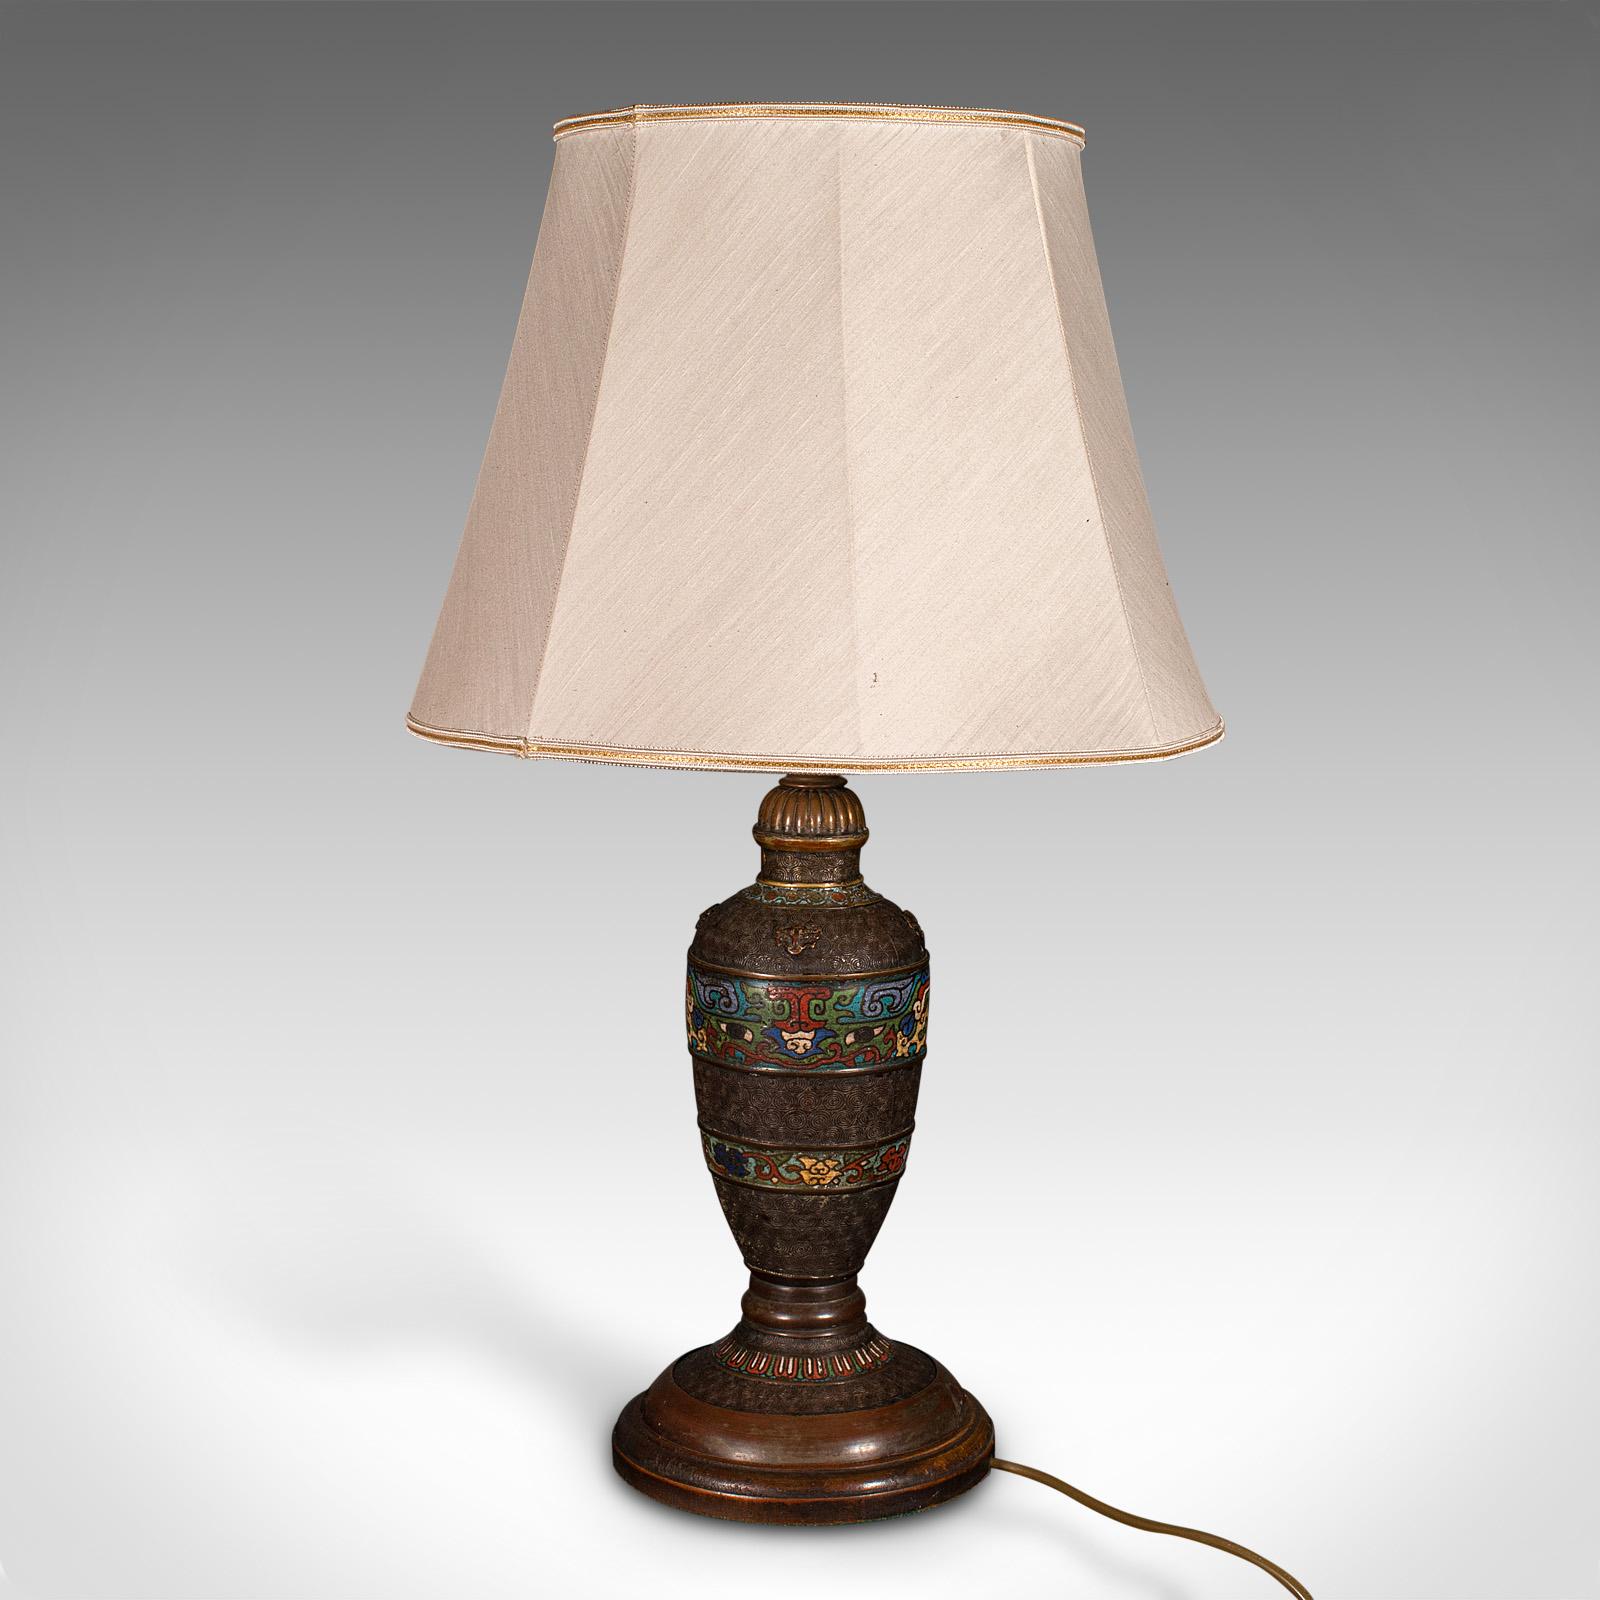 Antique Cloisonne Lamp, Japanese, Bronze, Table Light, Victorian, Meiji, C.1850 For Sale 2